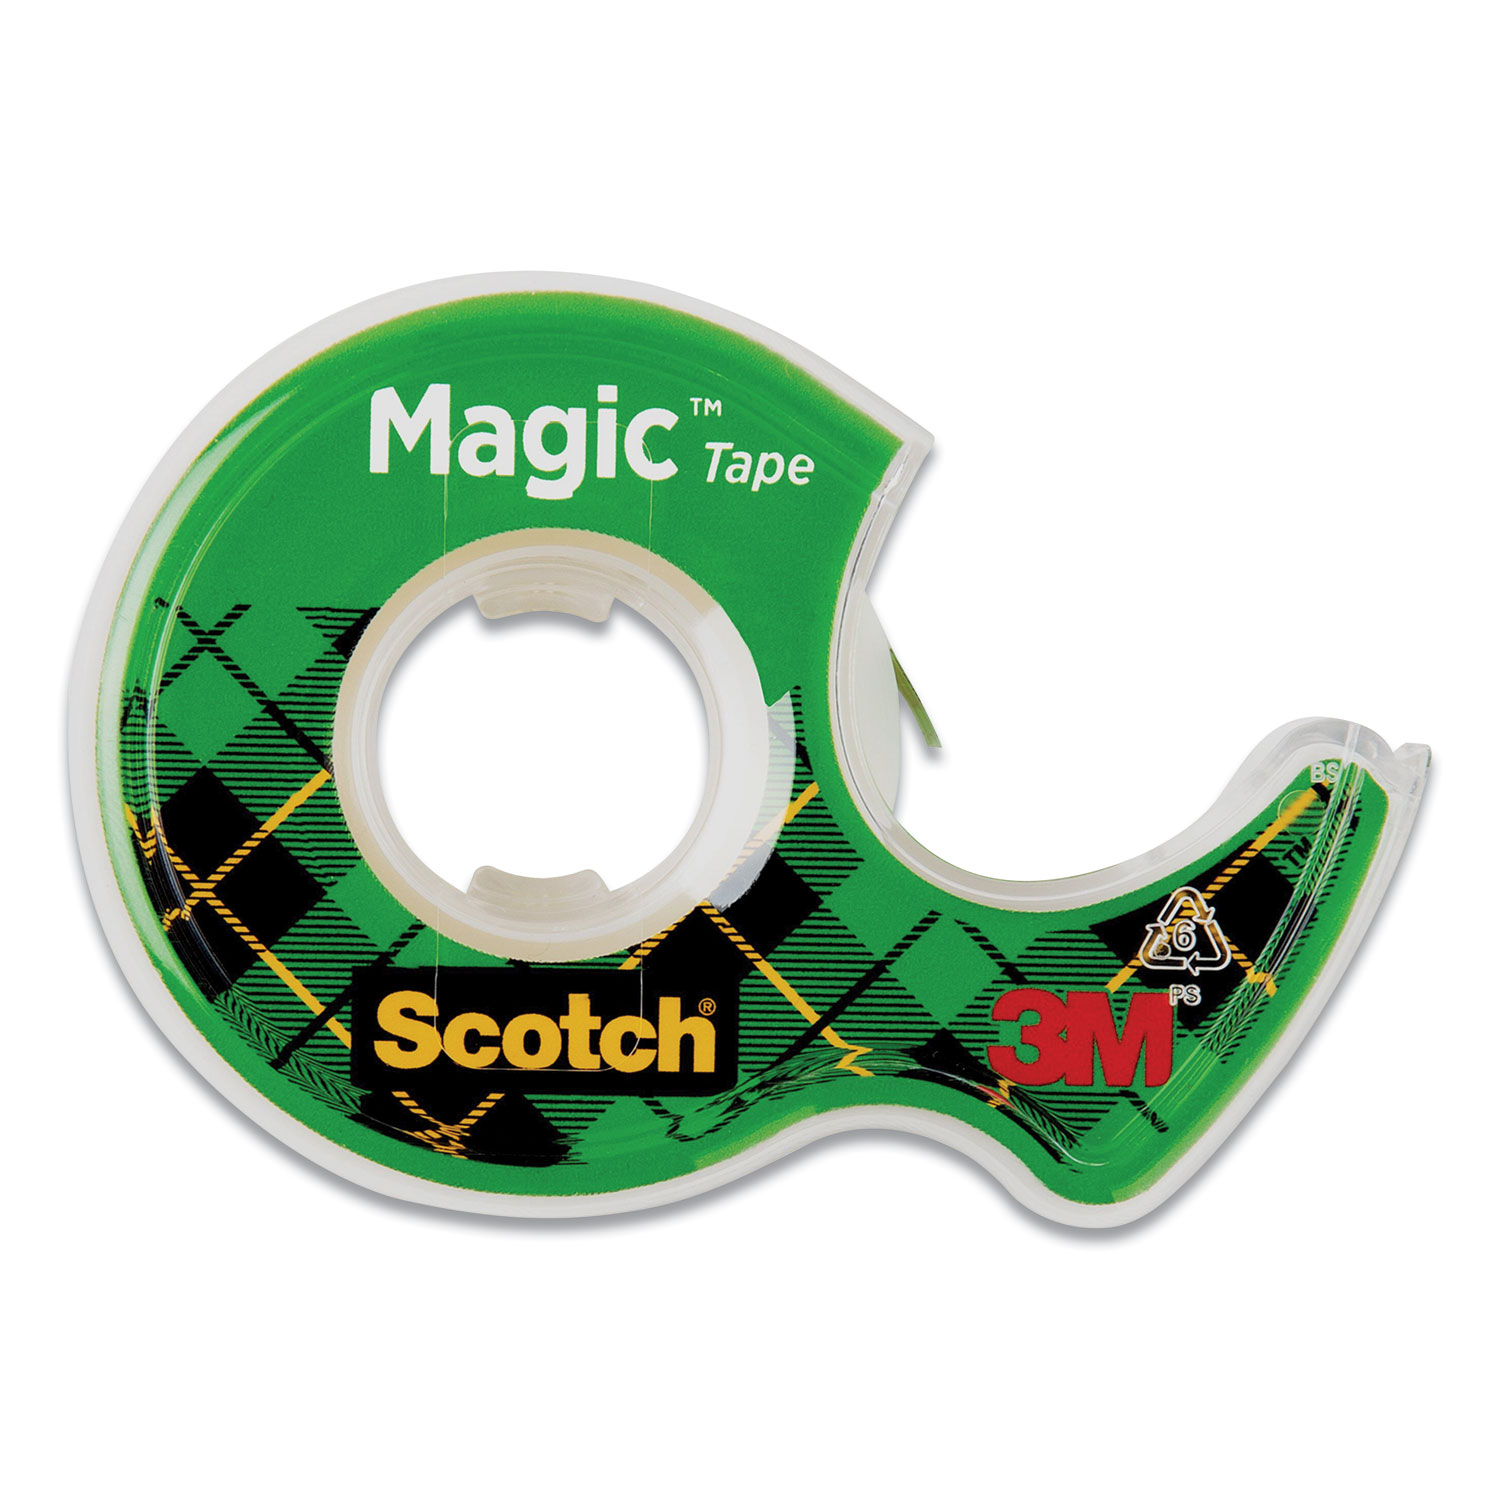 Scotch Magic Tape - Zerbee